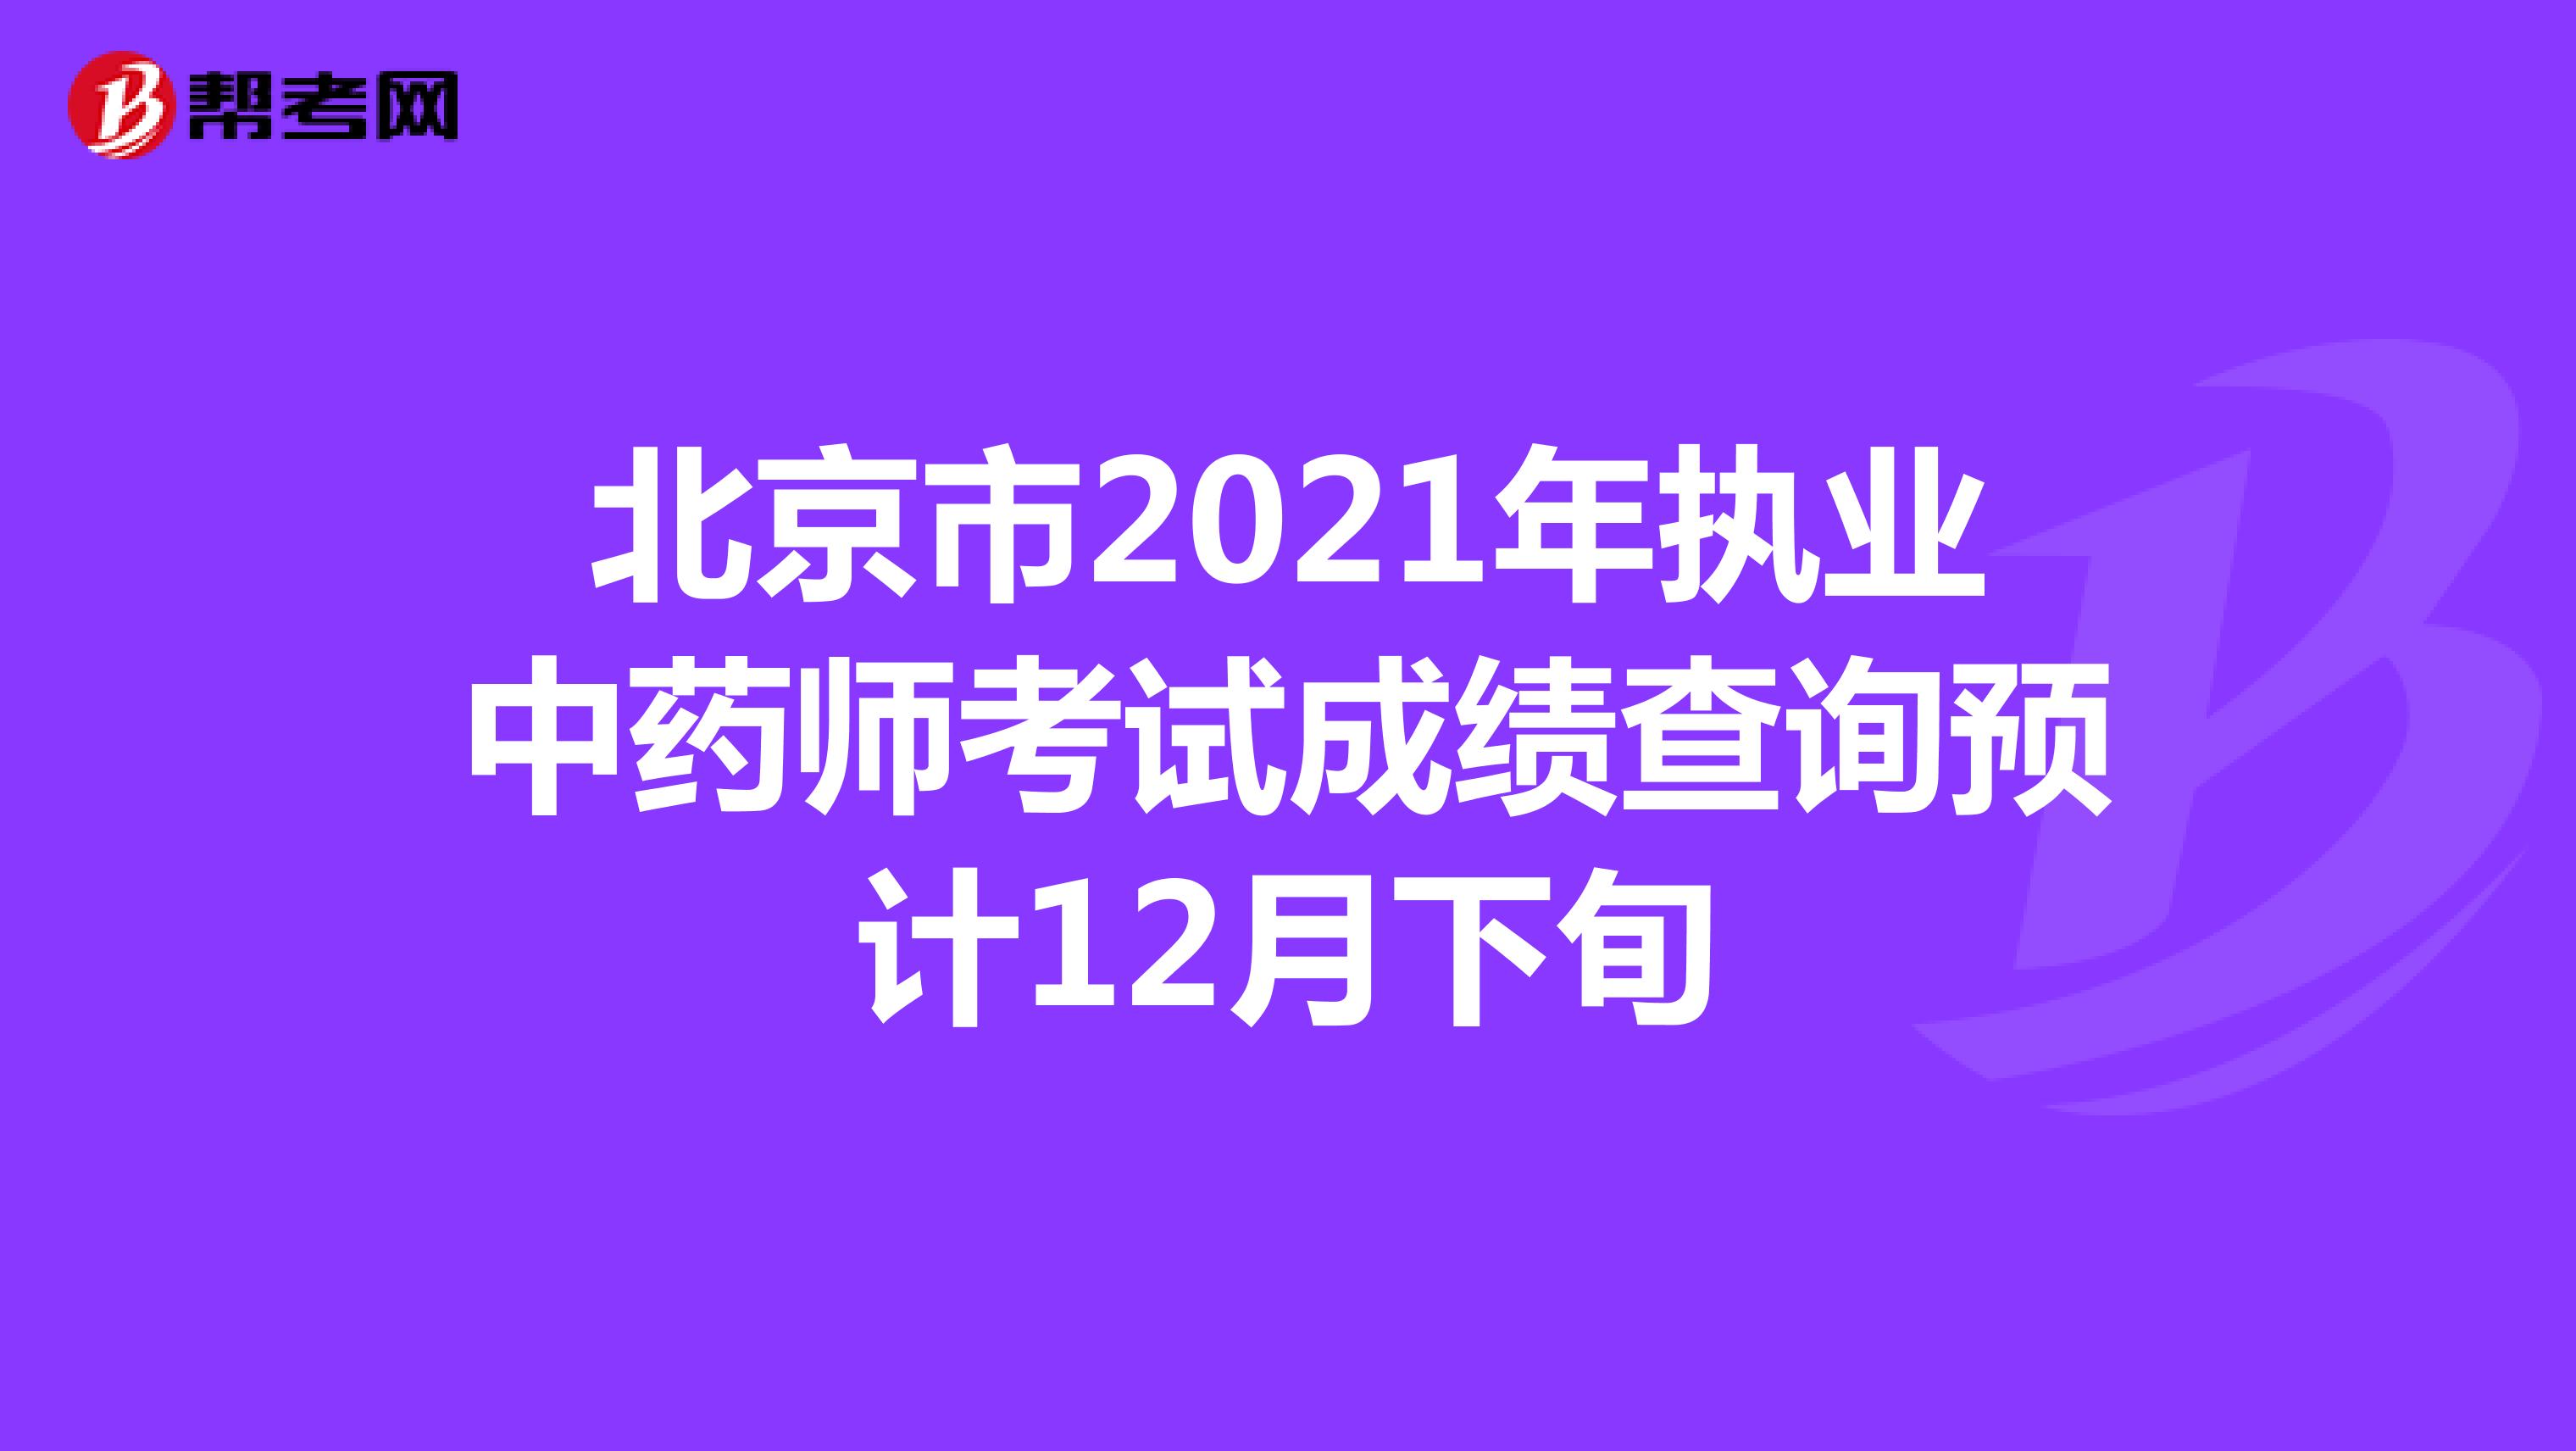 北京市2021年执业中药师考试成绩查询预计12月下旬